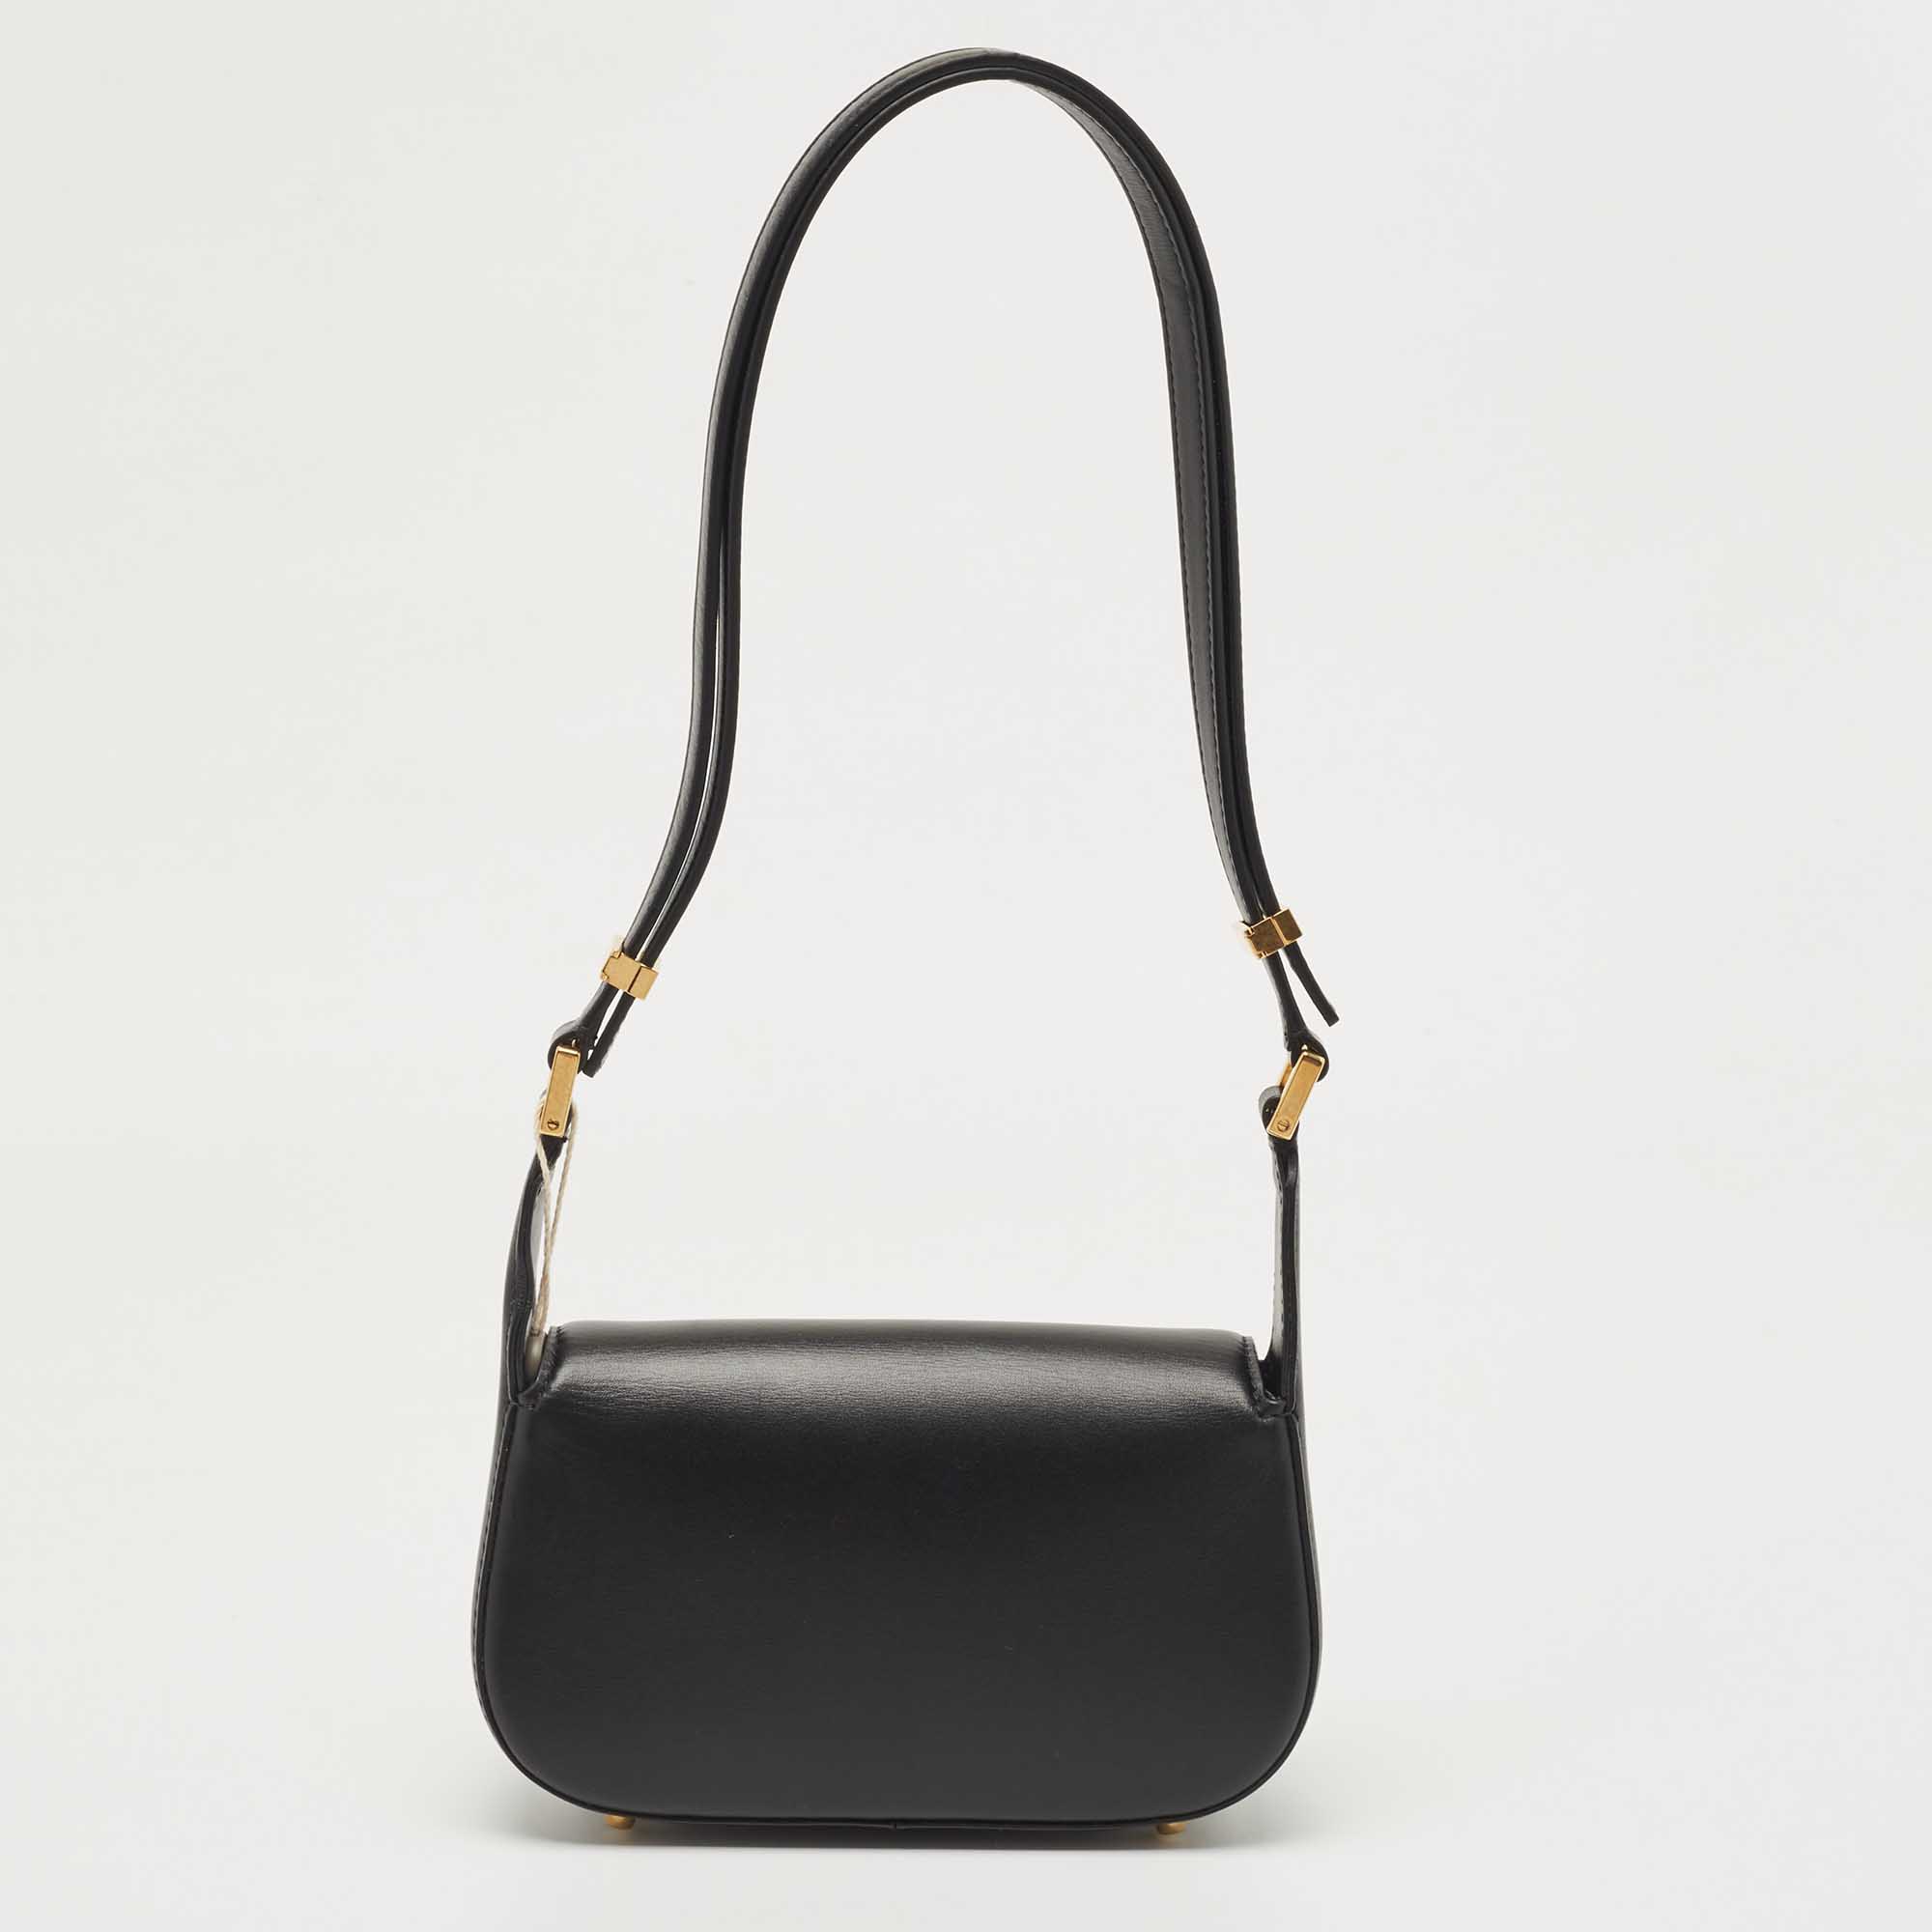 Valentino Black Leather Chain VLogo Shoulder Bag